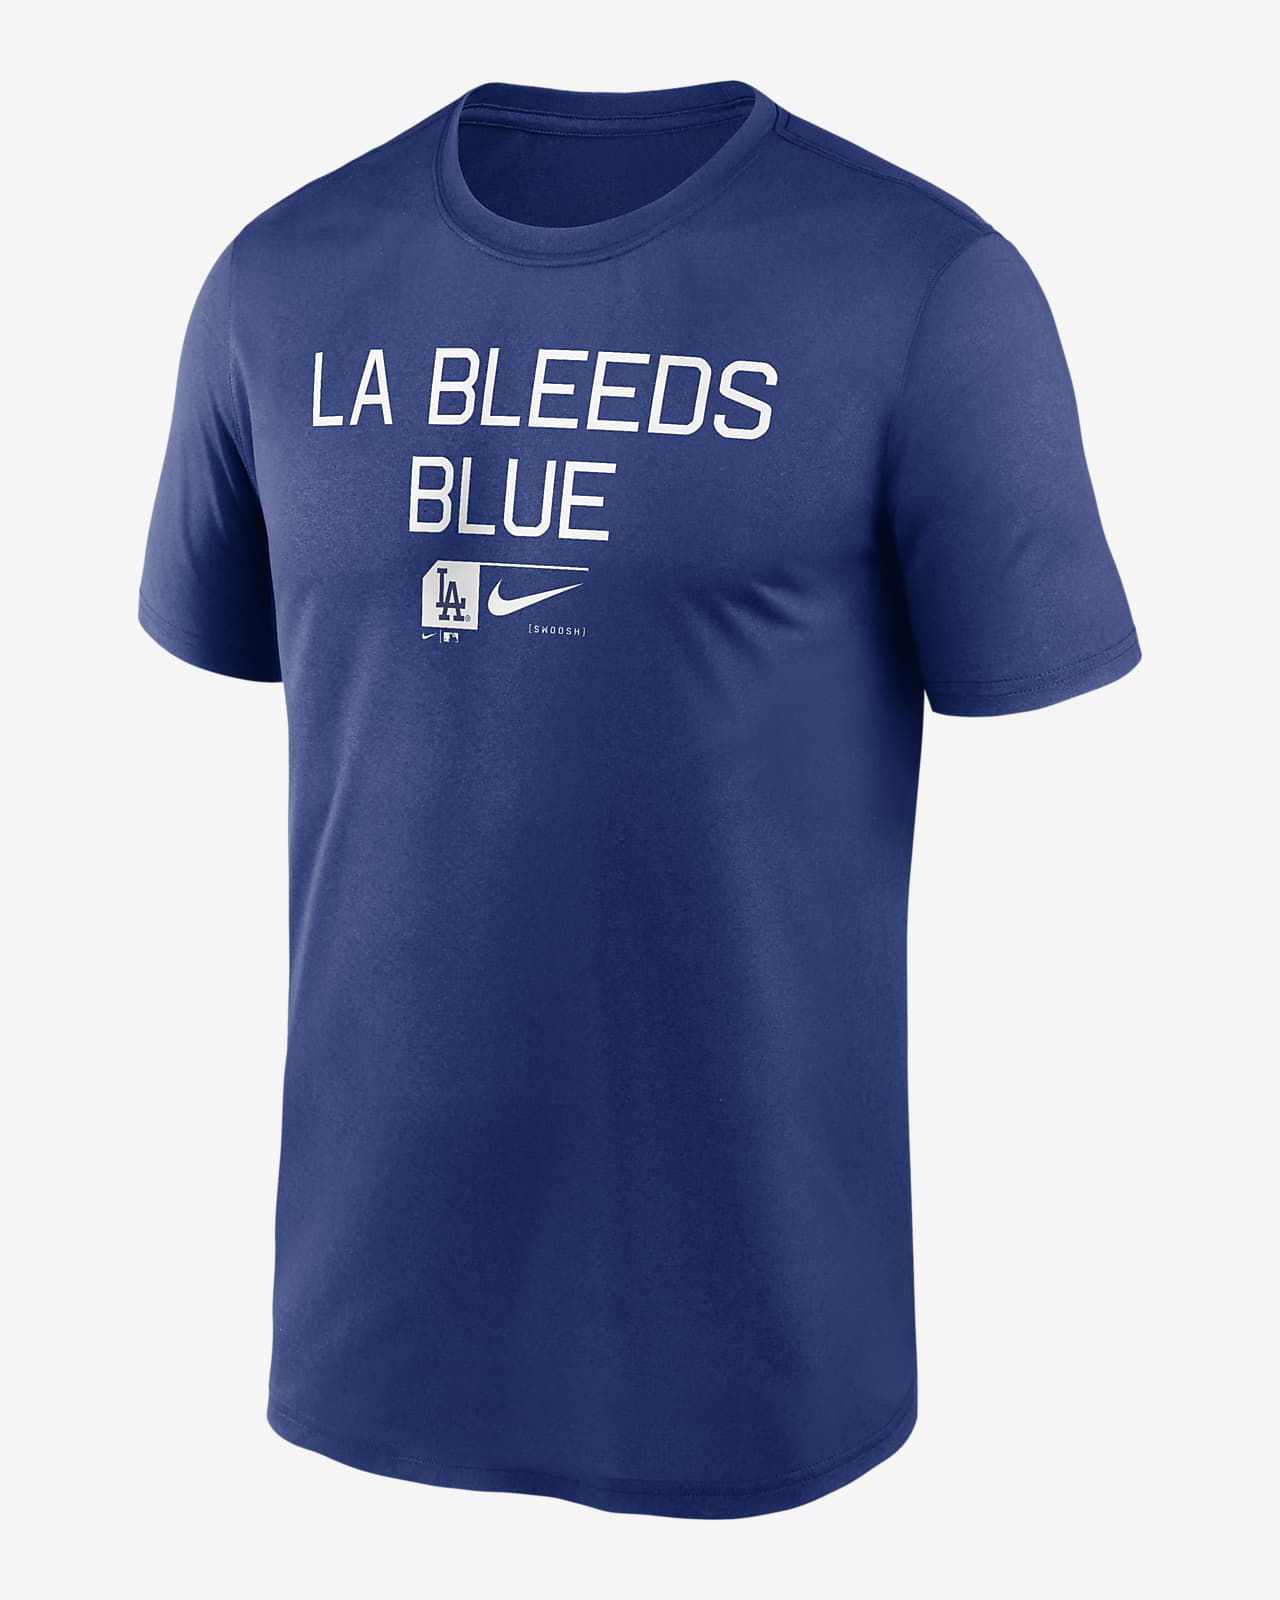 Playera Nike Dri-FIT de la MLB para hombre Los Angeles Dodgers Baseball Phrase Legend